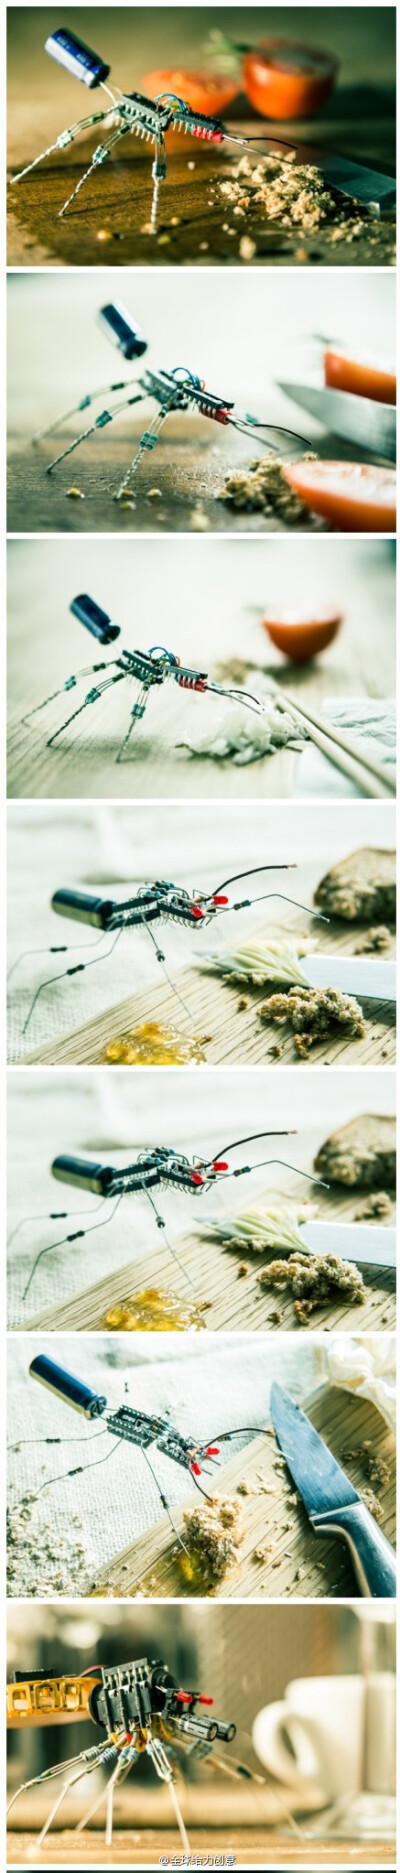 【电子元件昆虫】利用电子元件组装拼接变成惟妙惟肖的虫子，by Luca di Filippo